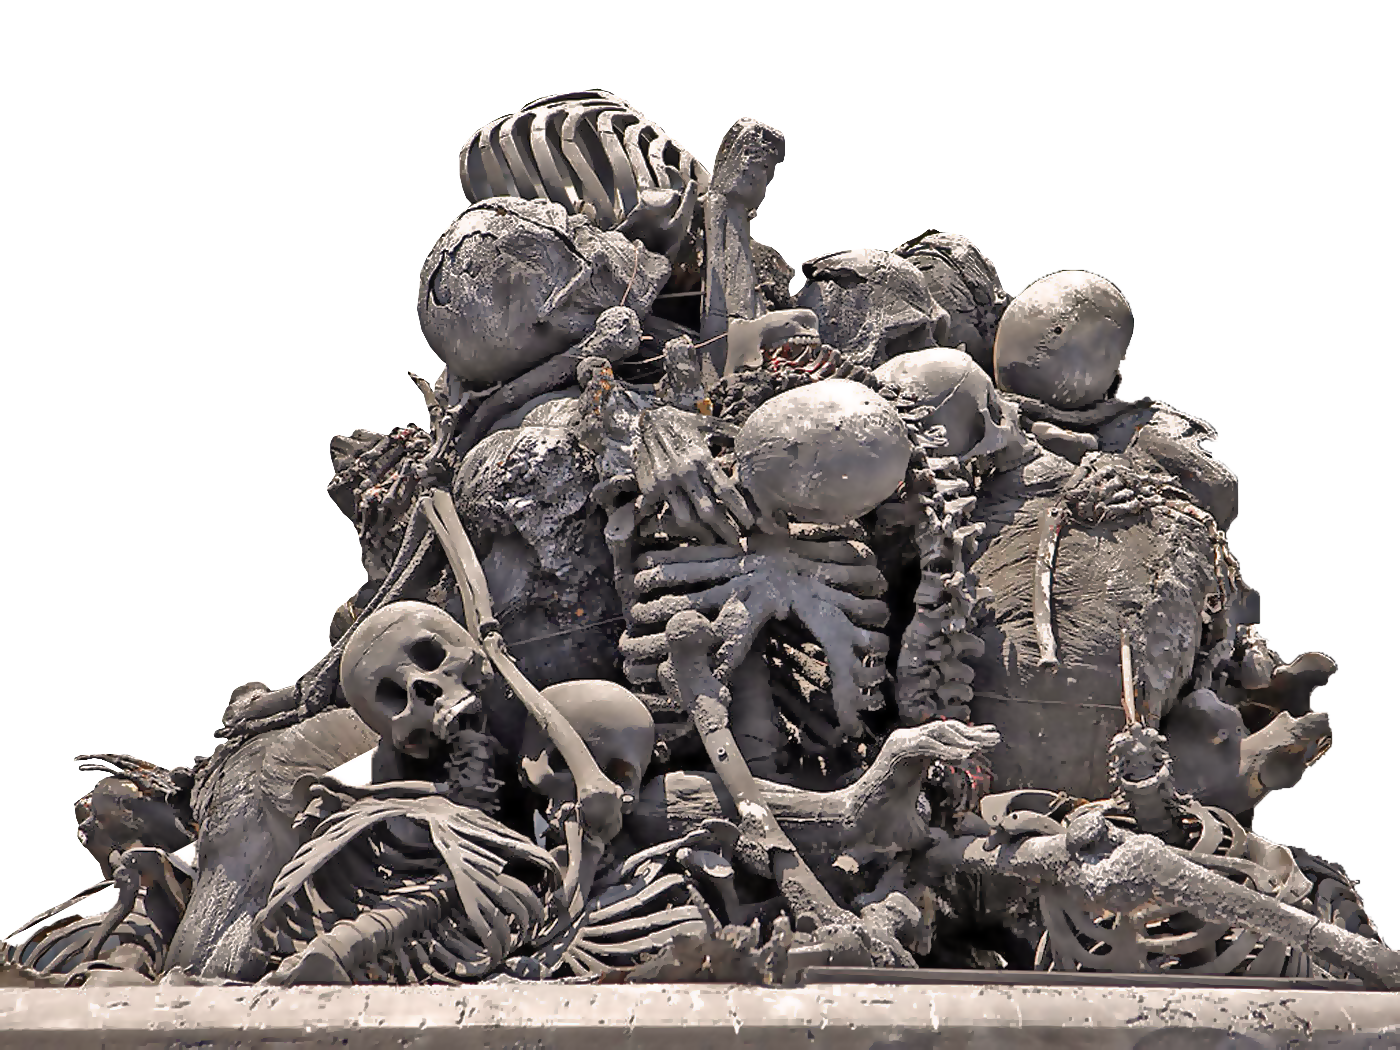 Download PNG image - Pile of Skulls Transparent Background 